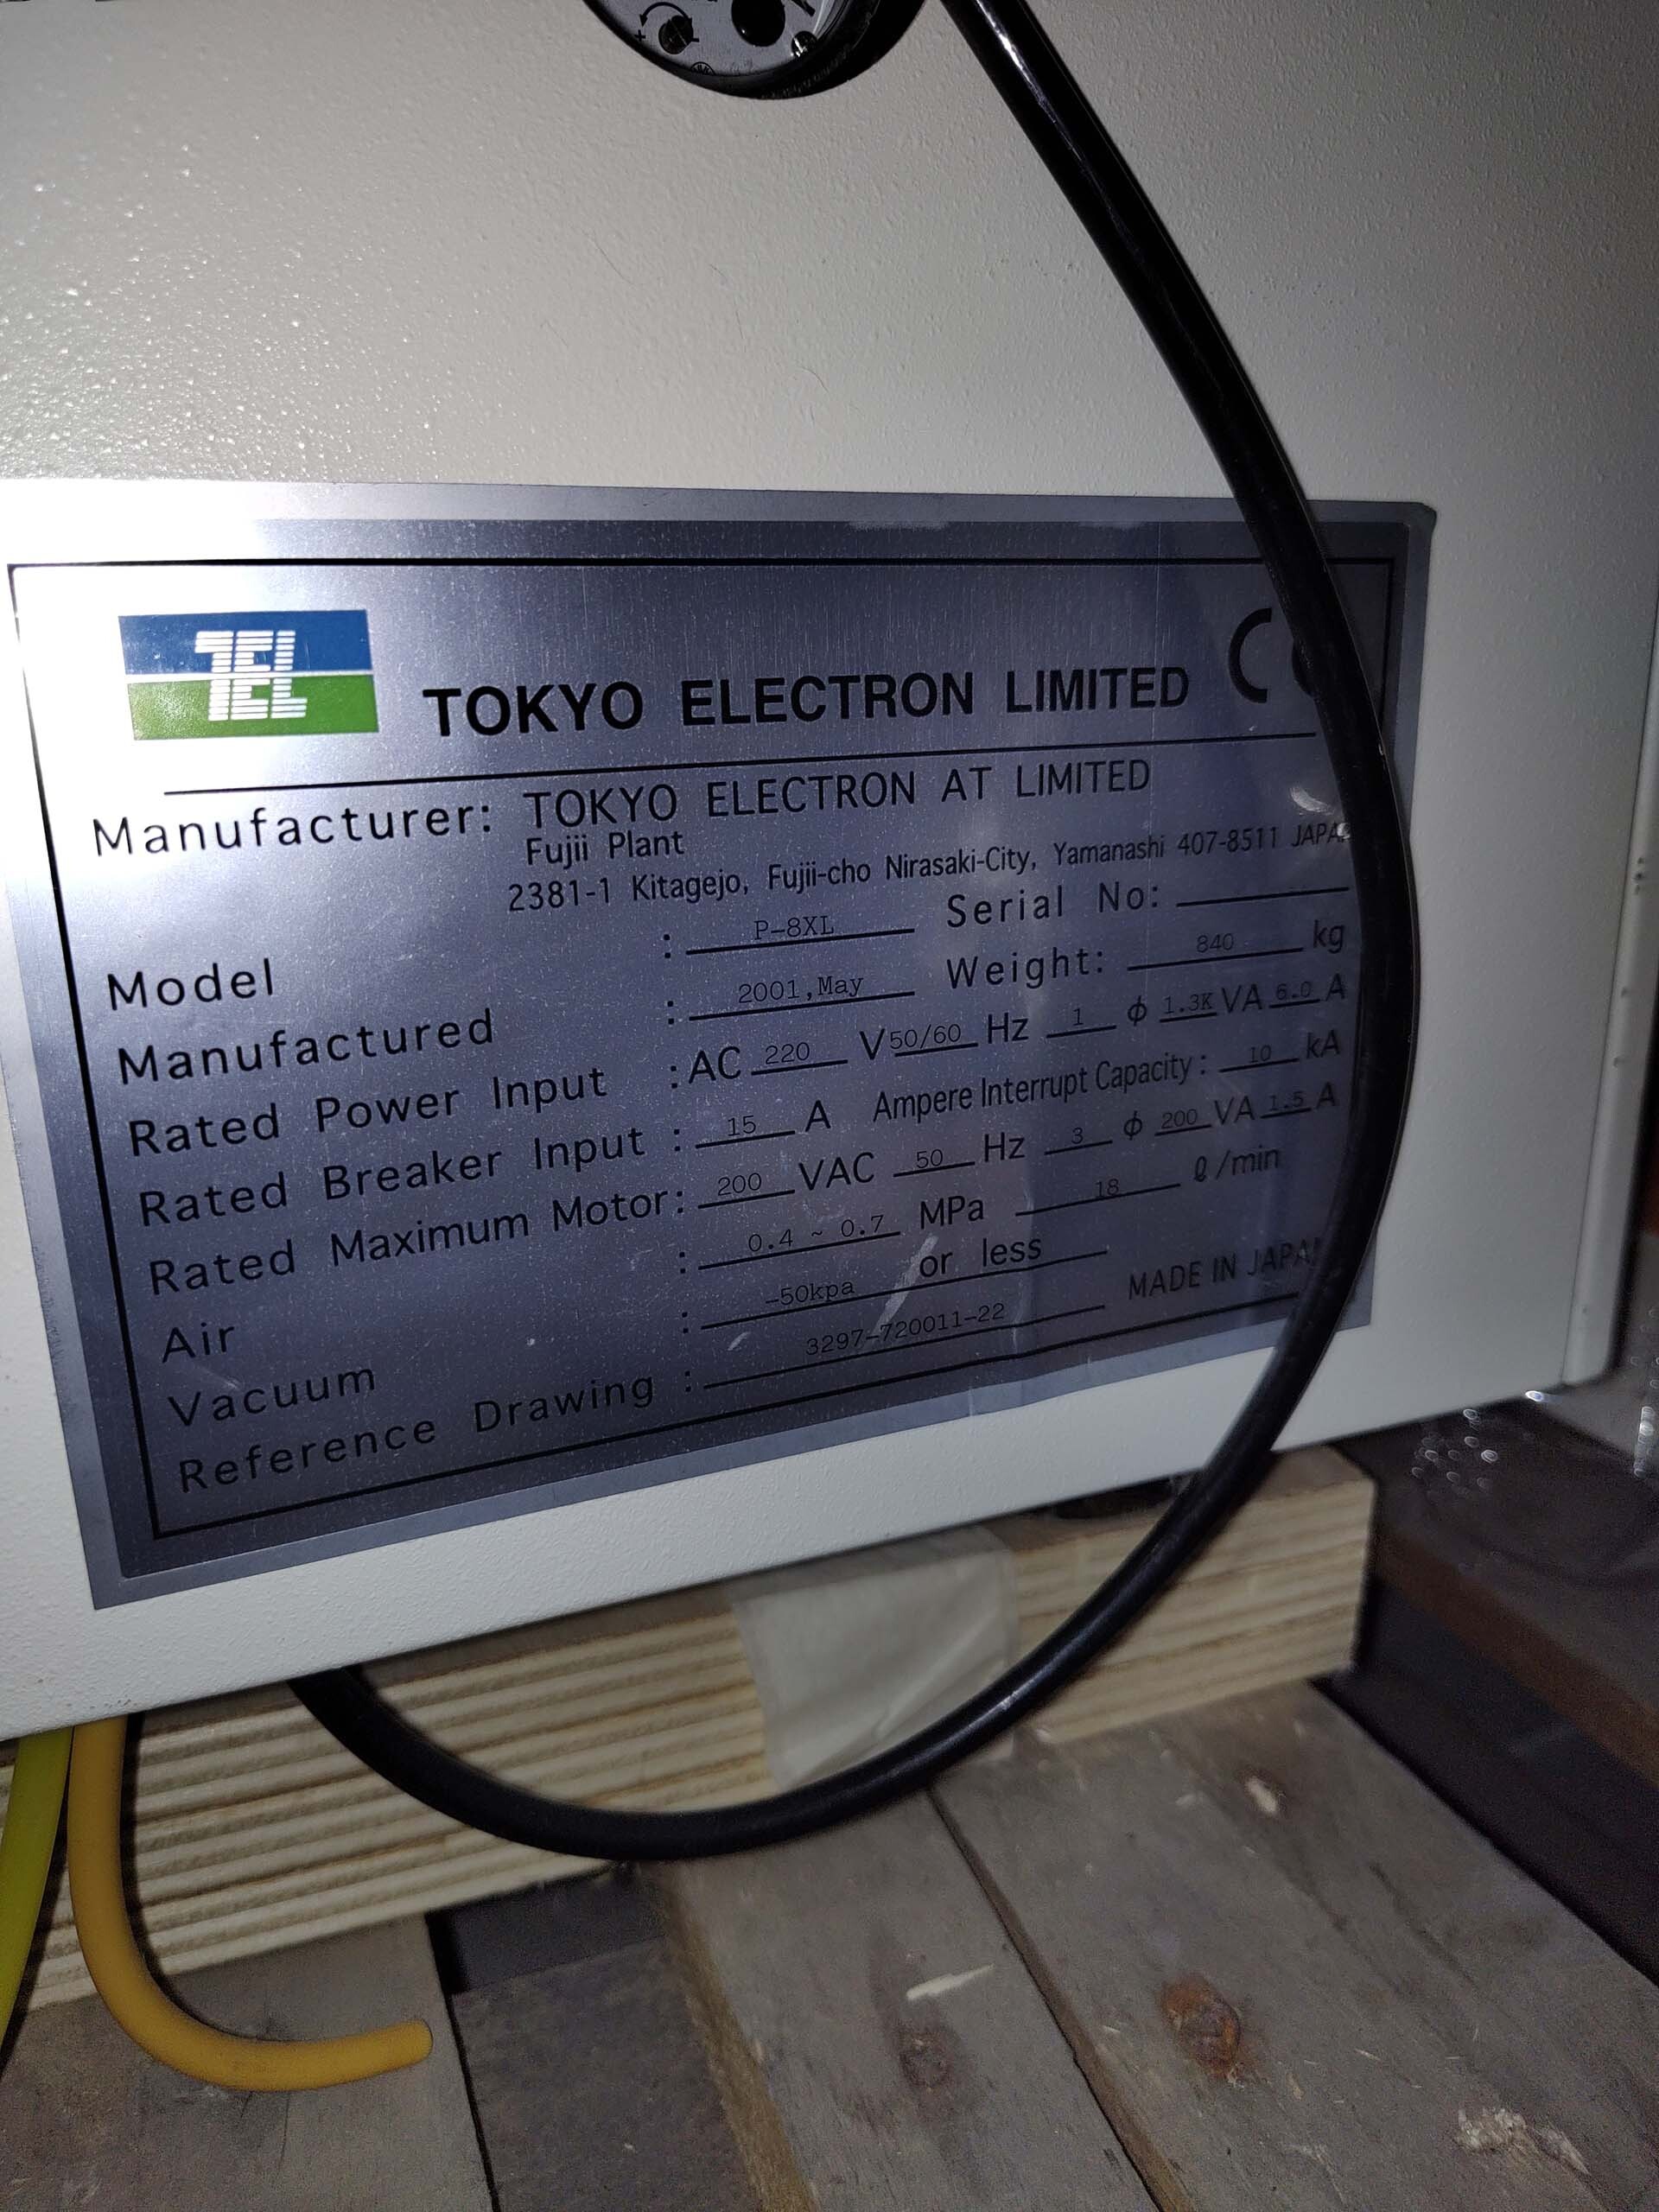 사진 사용됨 TEL / TOKYO ELECTRON P-8XL 판매용